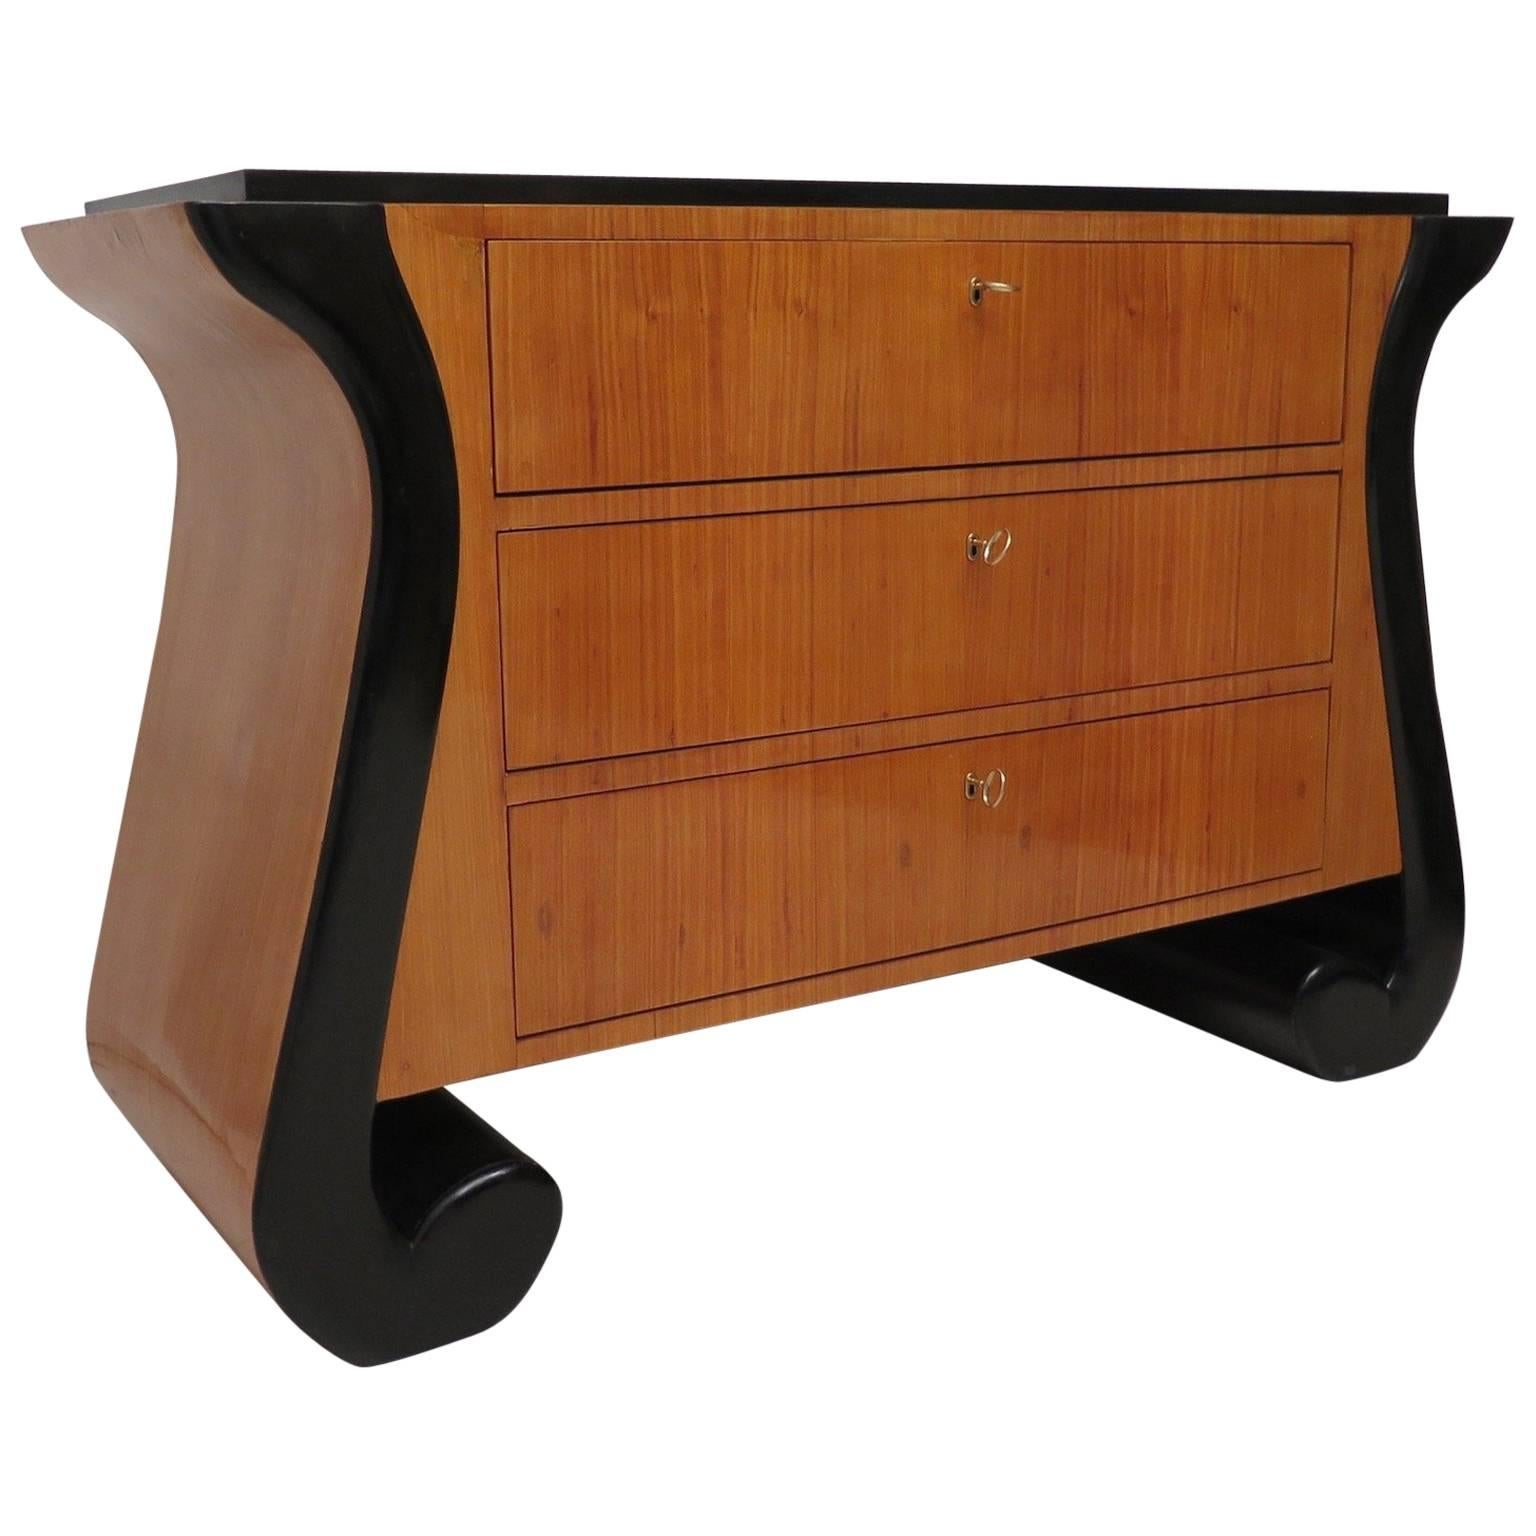 Special Design for This Art Deco Dresser